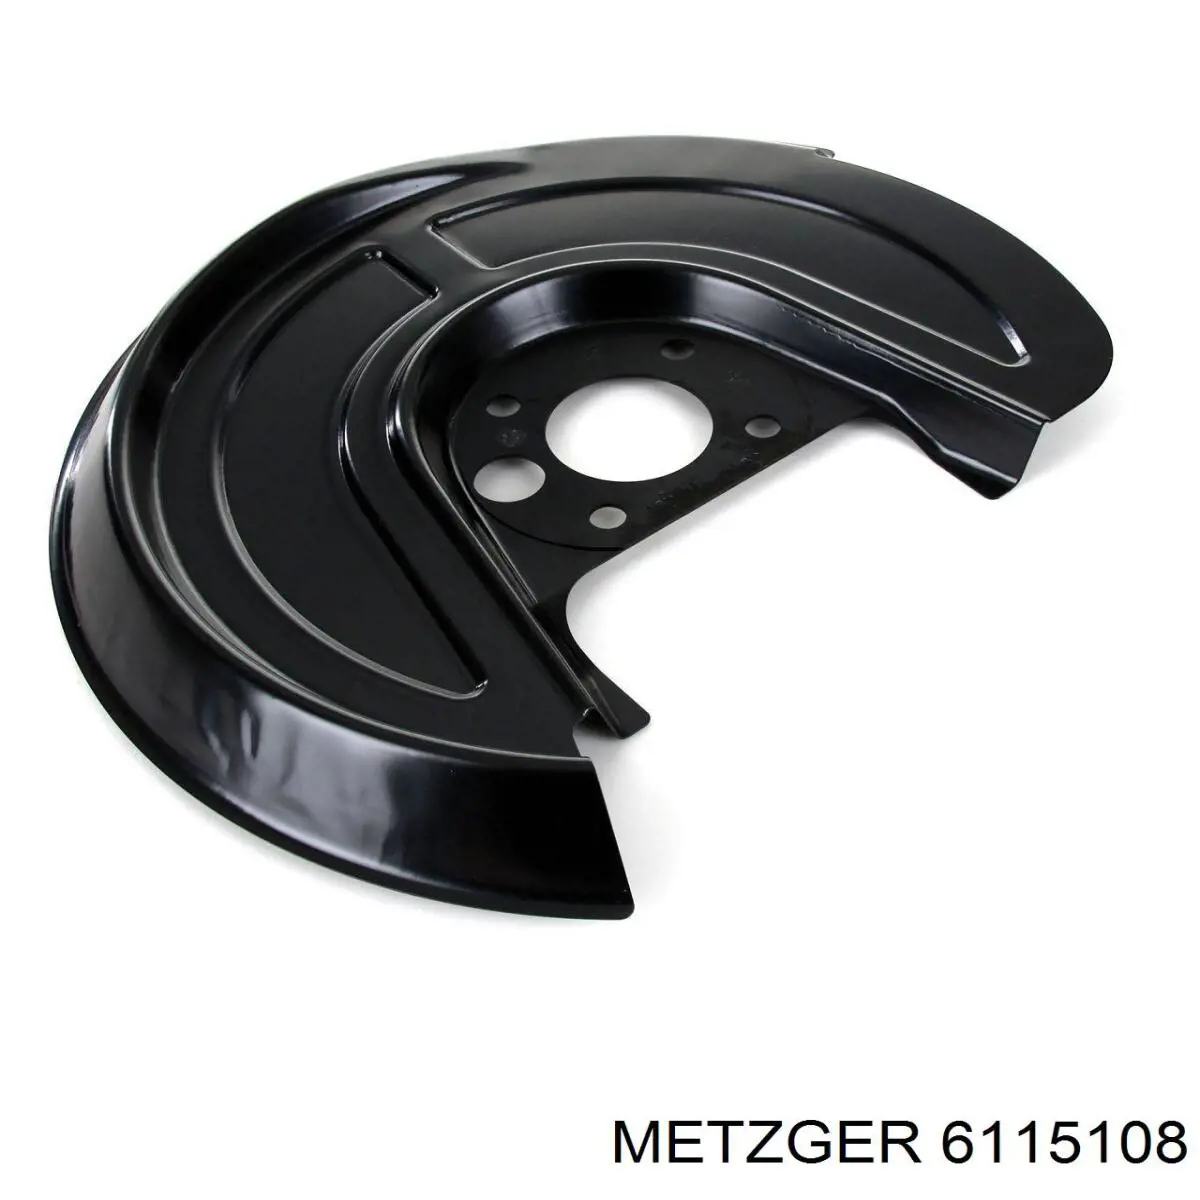 6115108 Metzger chapa protectora contra salpicaduras, disco de freno trasero derecho